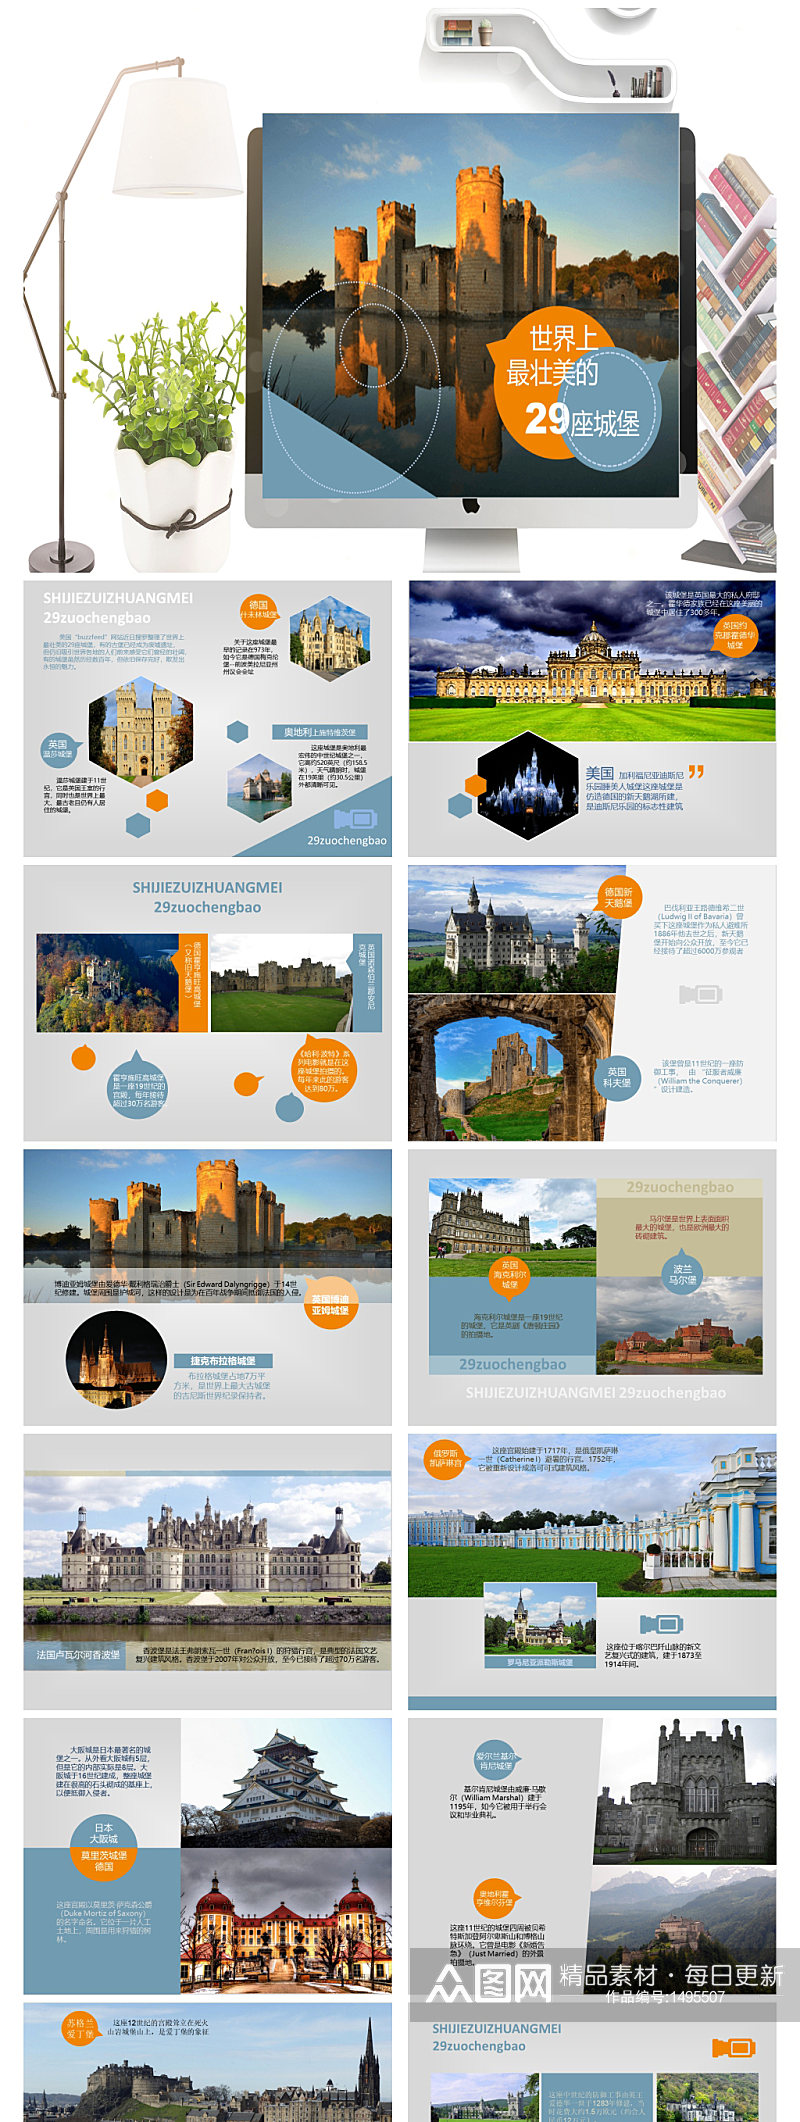 最壮美的29座城堡介绍PPT素材